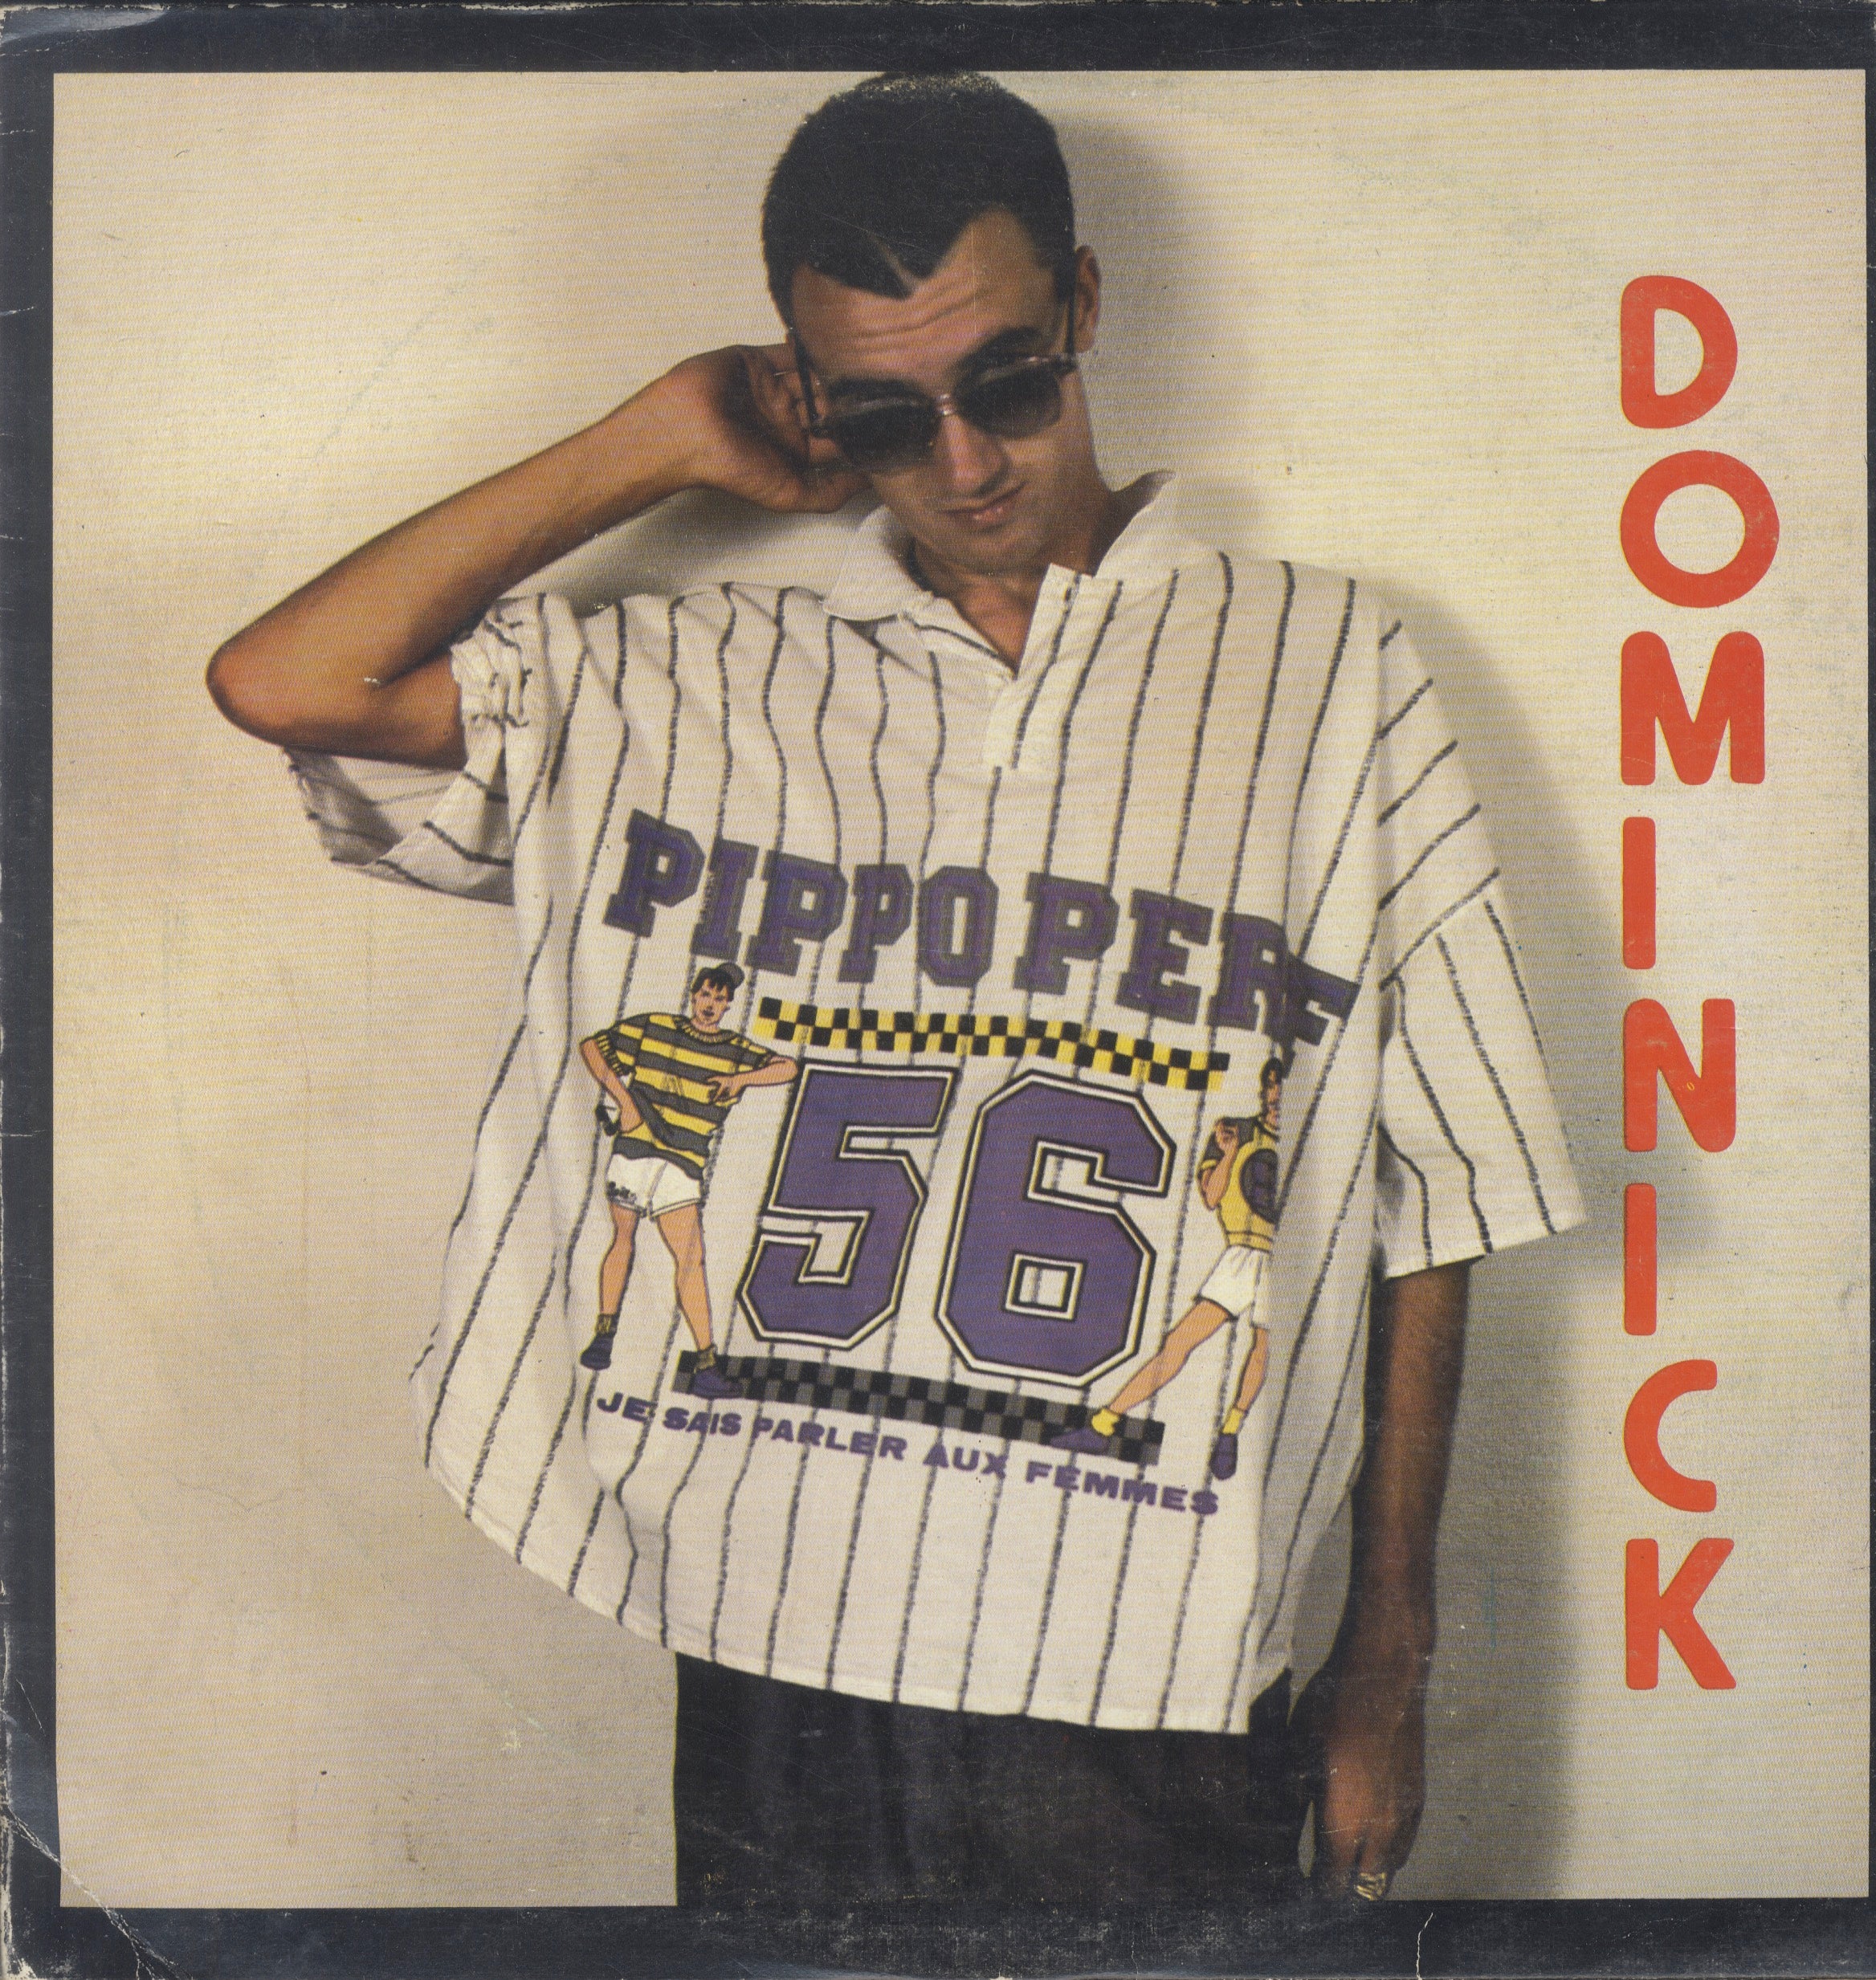 DOMINICK [Dominick]